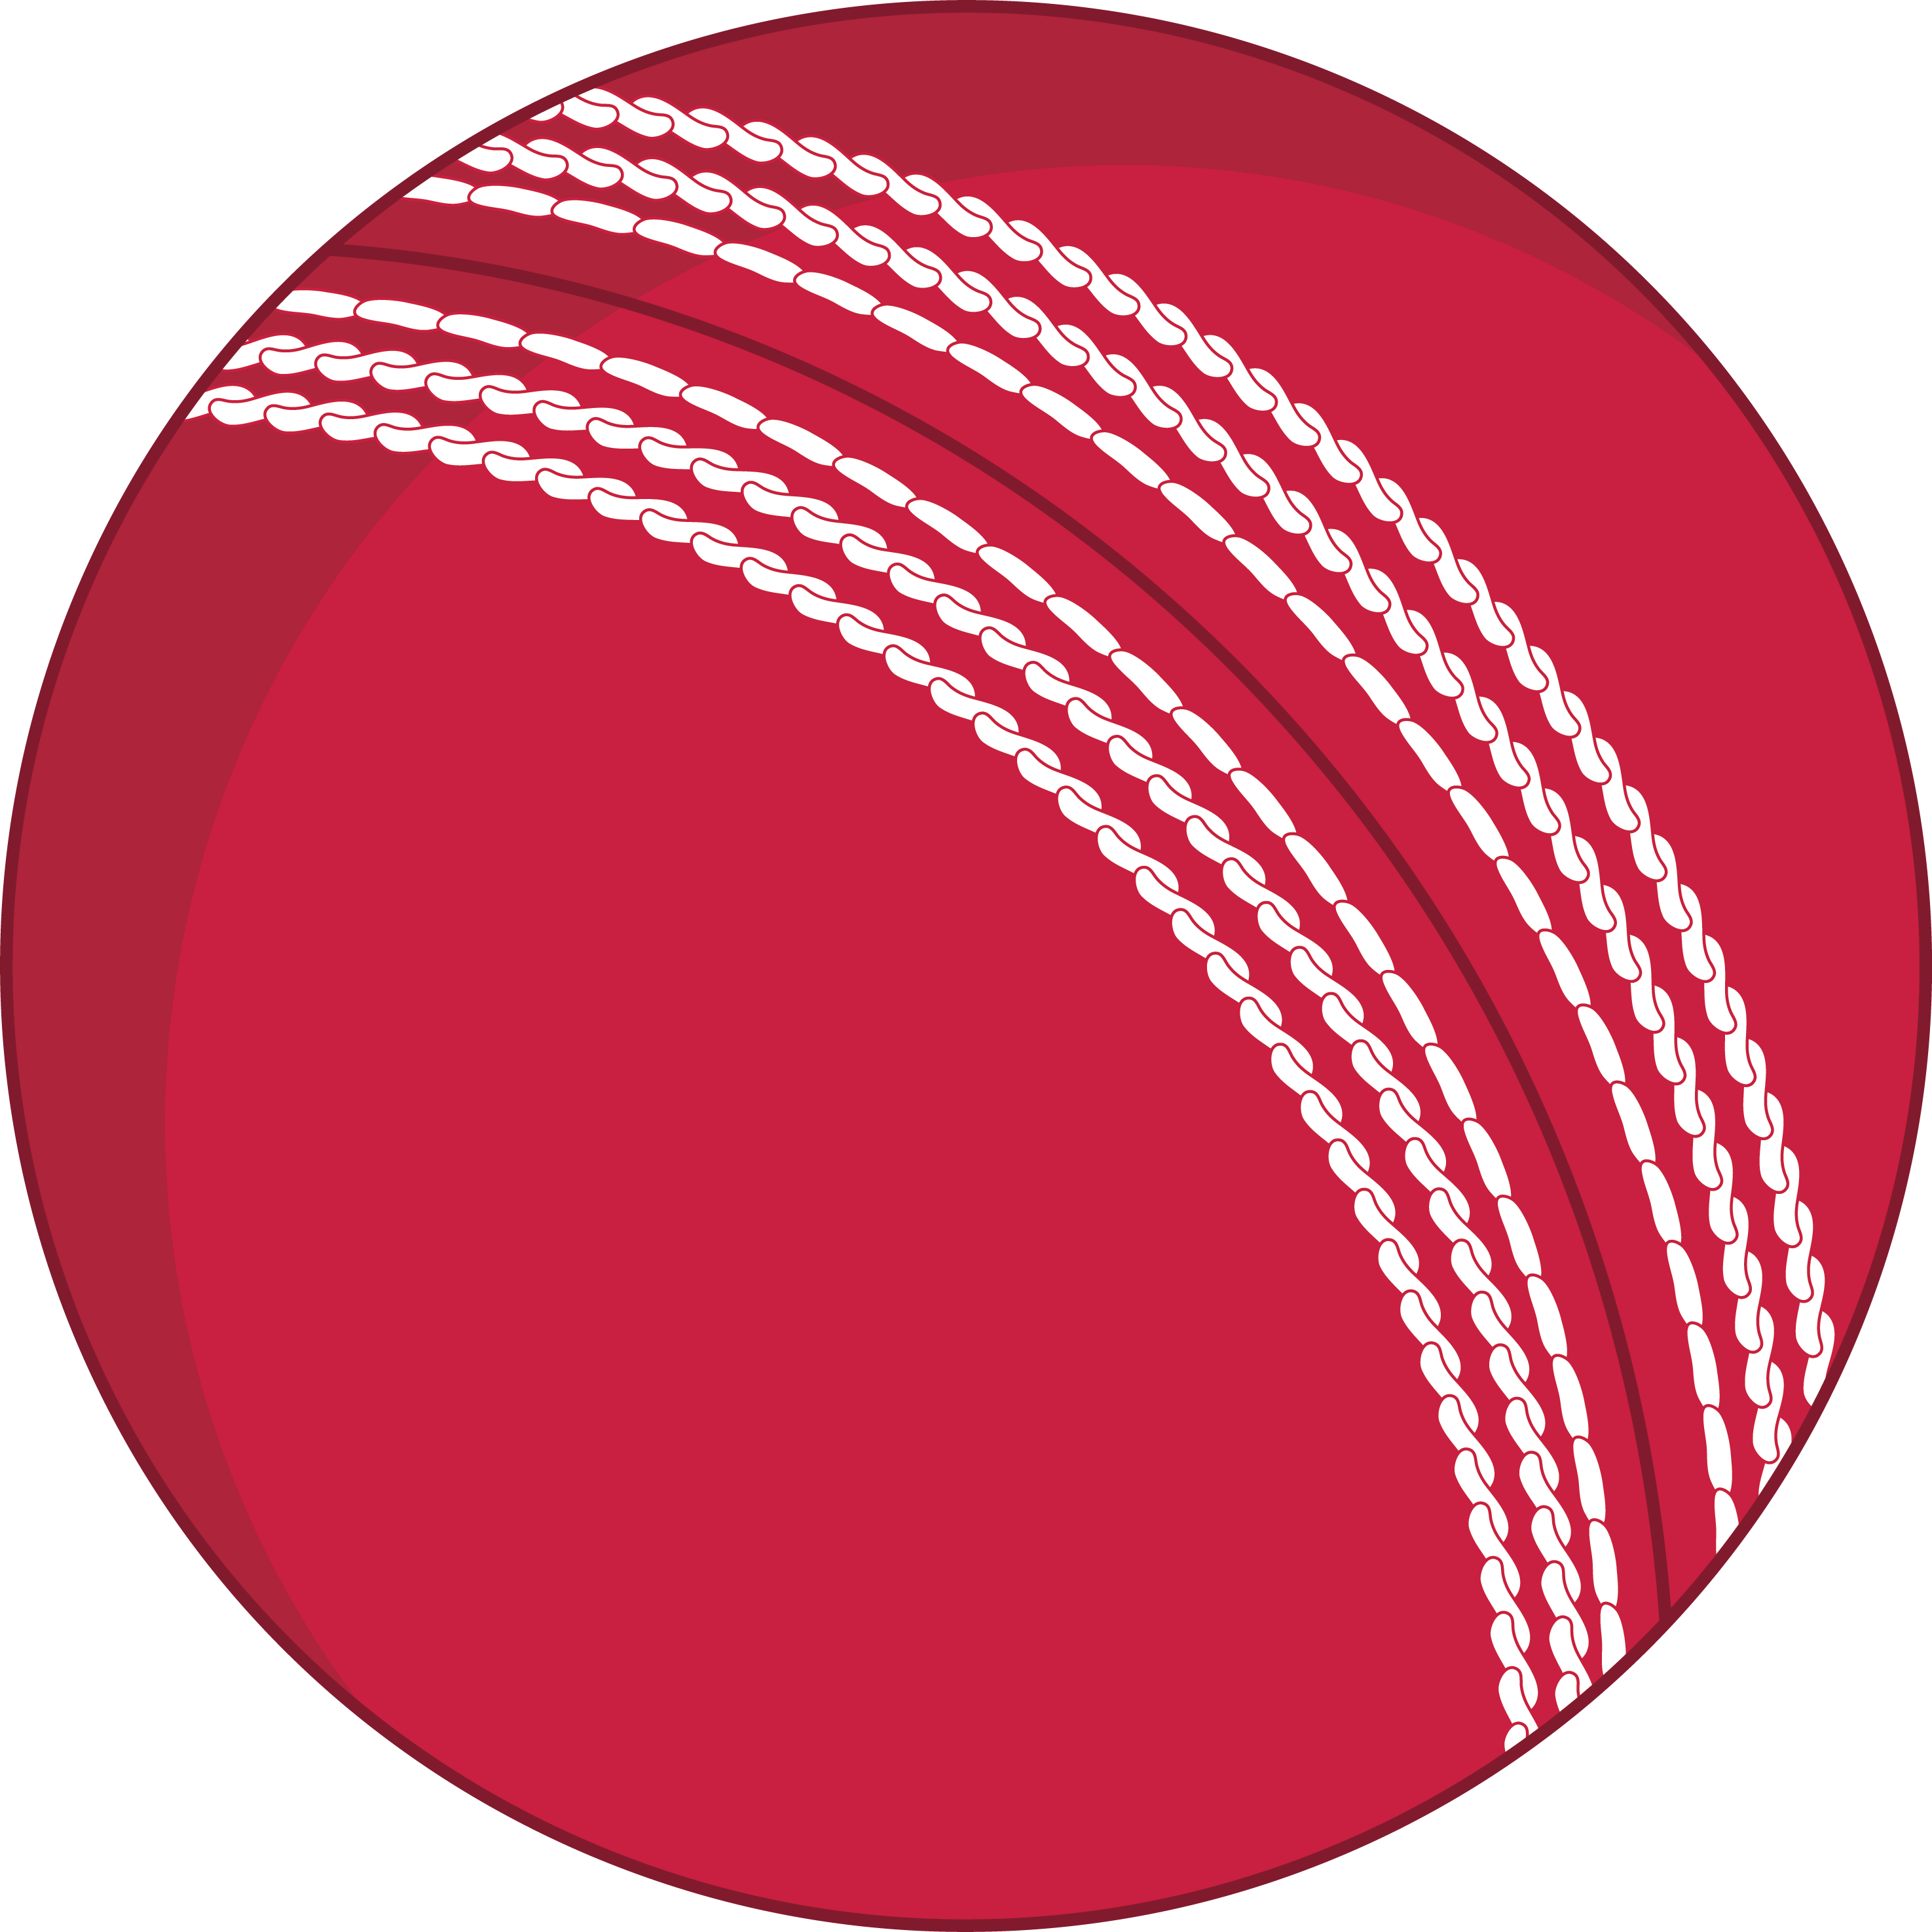 Cricket Ball Logo - Cricket ball logo png 4 PNG Image